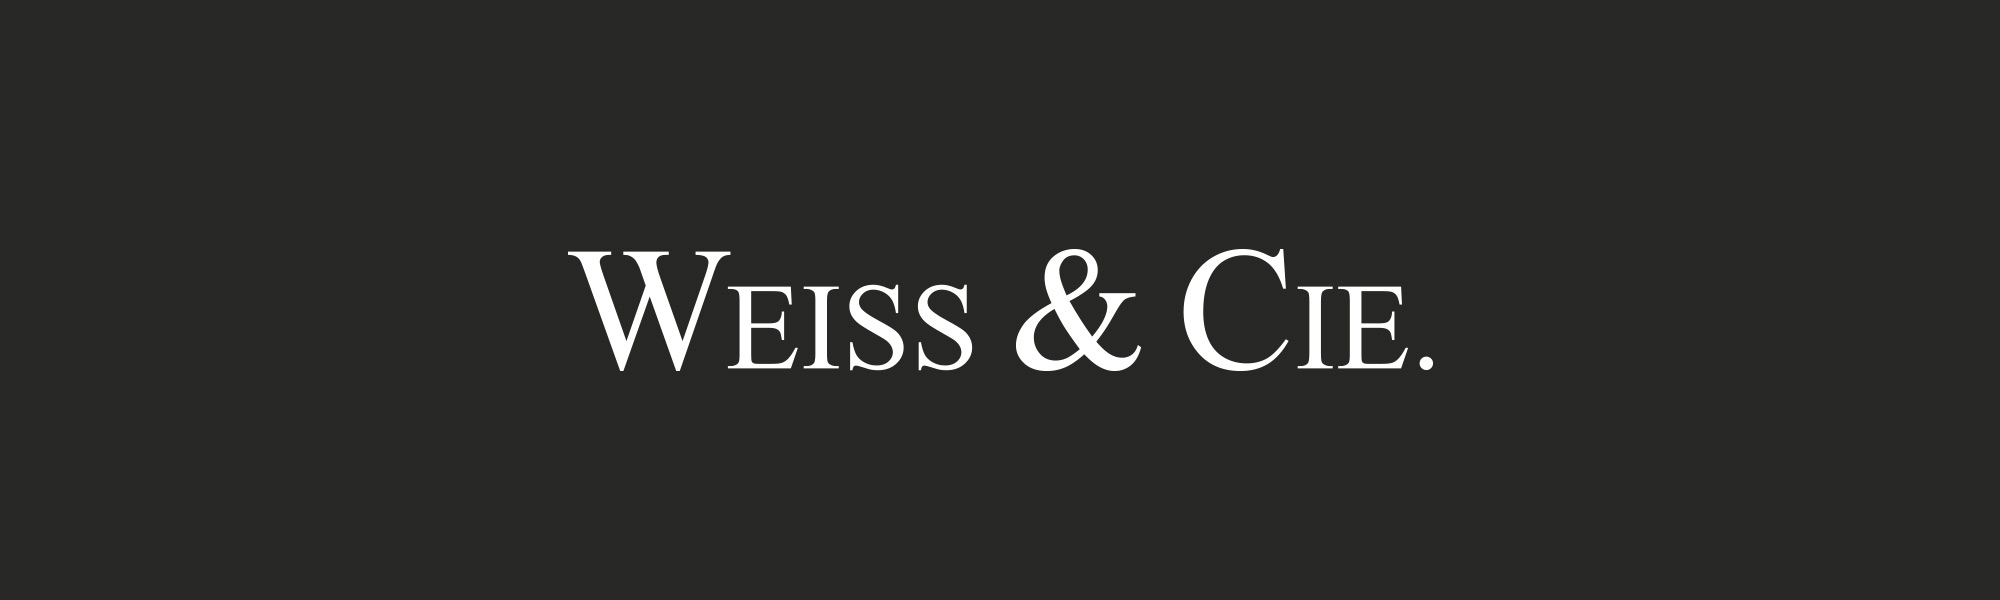 Weiss & Cie. Digital Branding